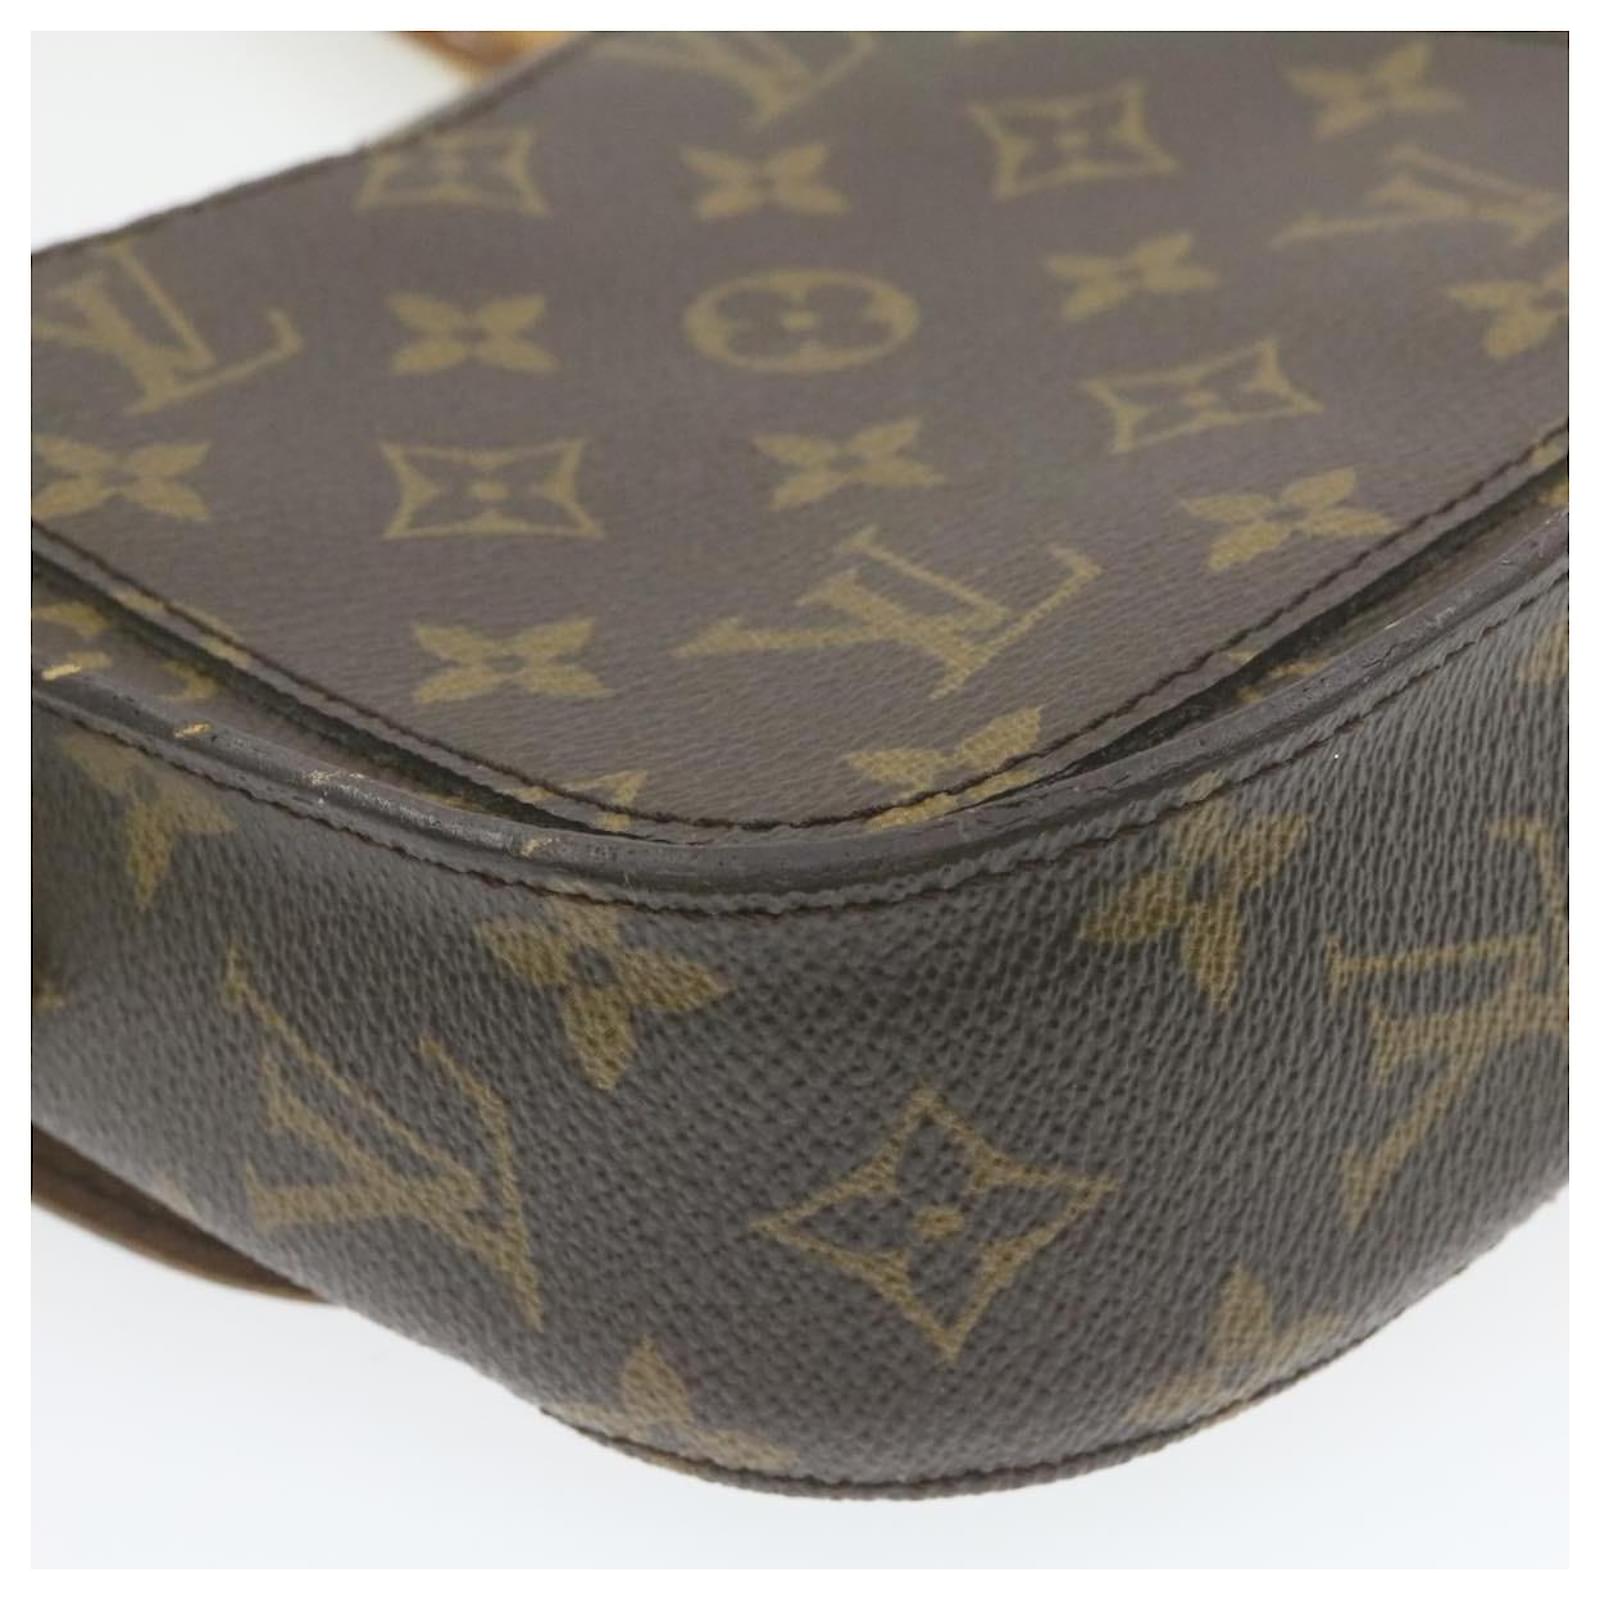 Louis Vuitton Monogram Saint Cloud PM Shoulder Bag M51244 LV Auth am888g